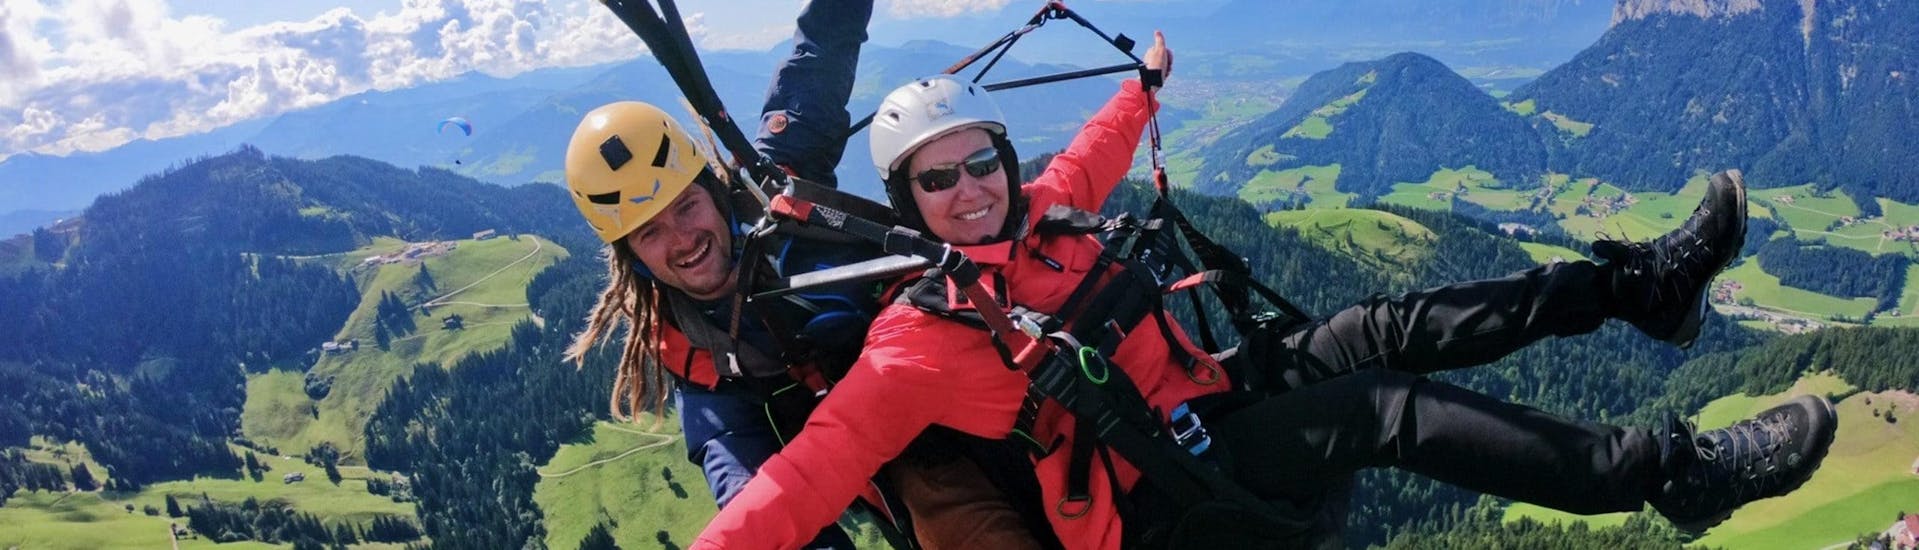 Ein Tandempilot von TirolAir und seine Passagierin, die den Thermikflug gebucht hat, haben sichtlich Freude am Paragliding von der Hohen Salve.